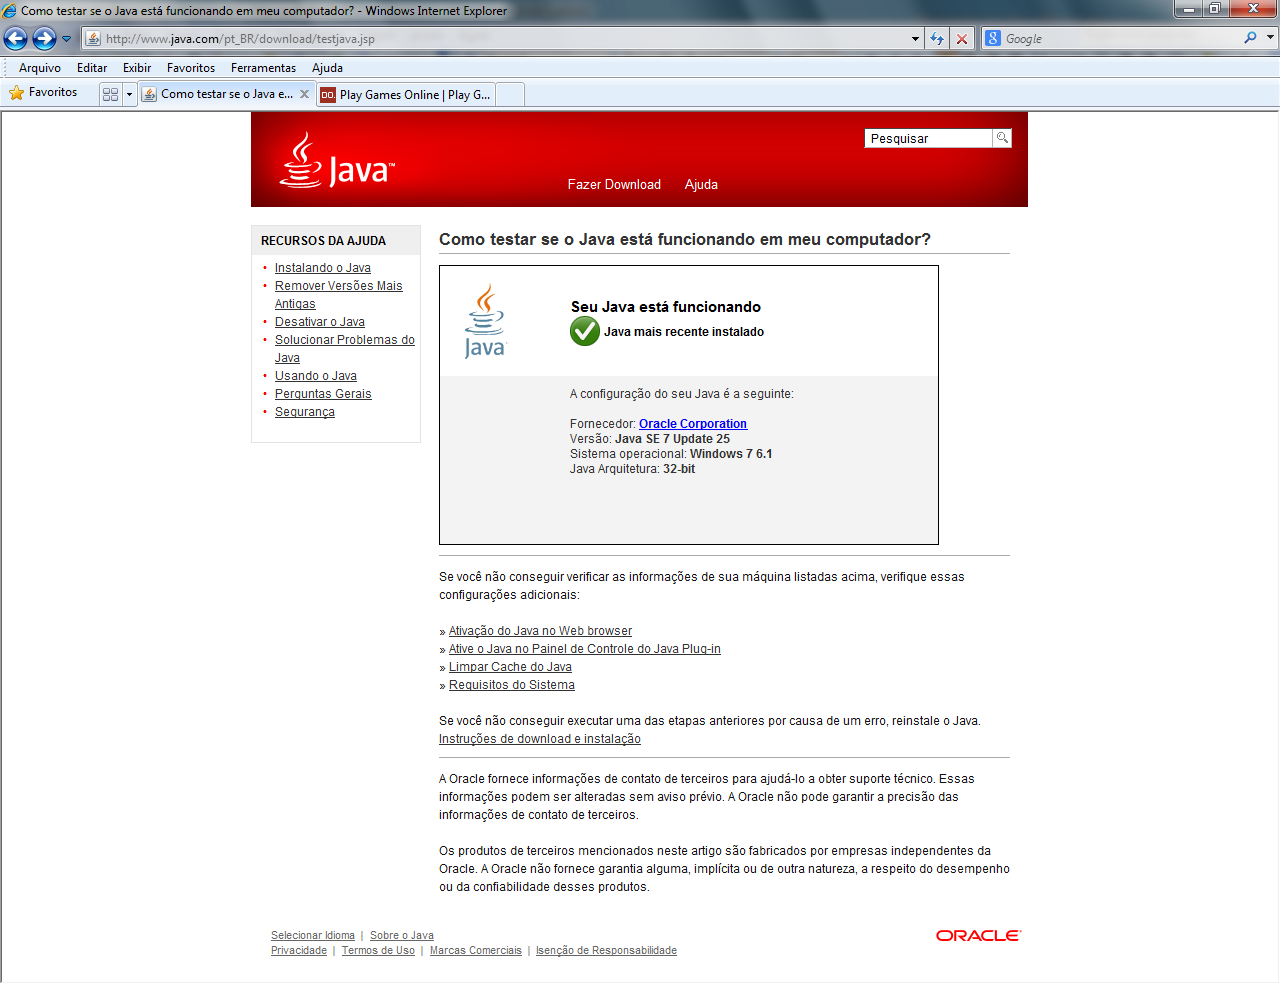 Como Ativar o Java no Web Browser. Como eu ativo o Java no meu Web browser?